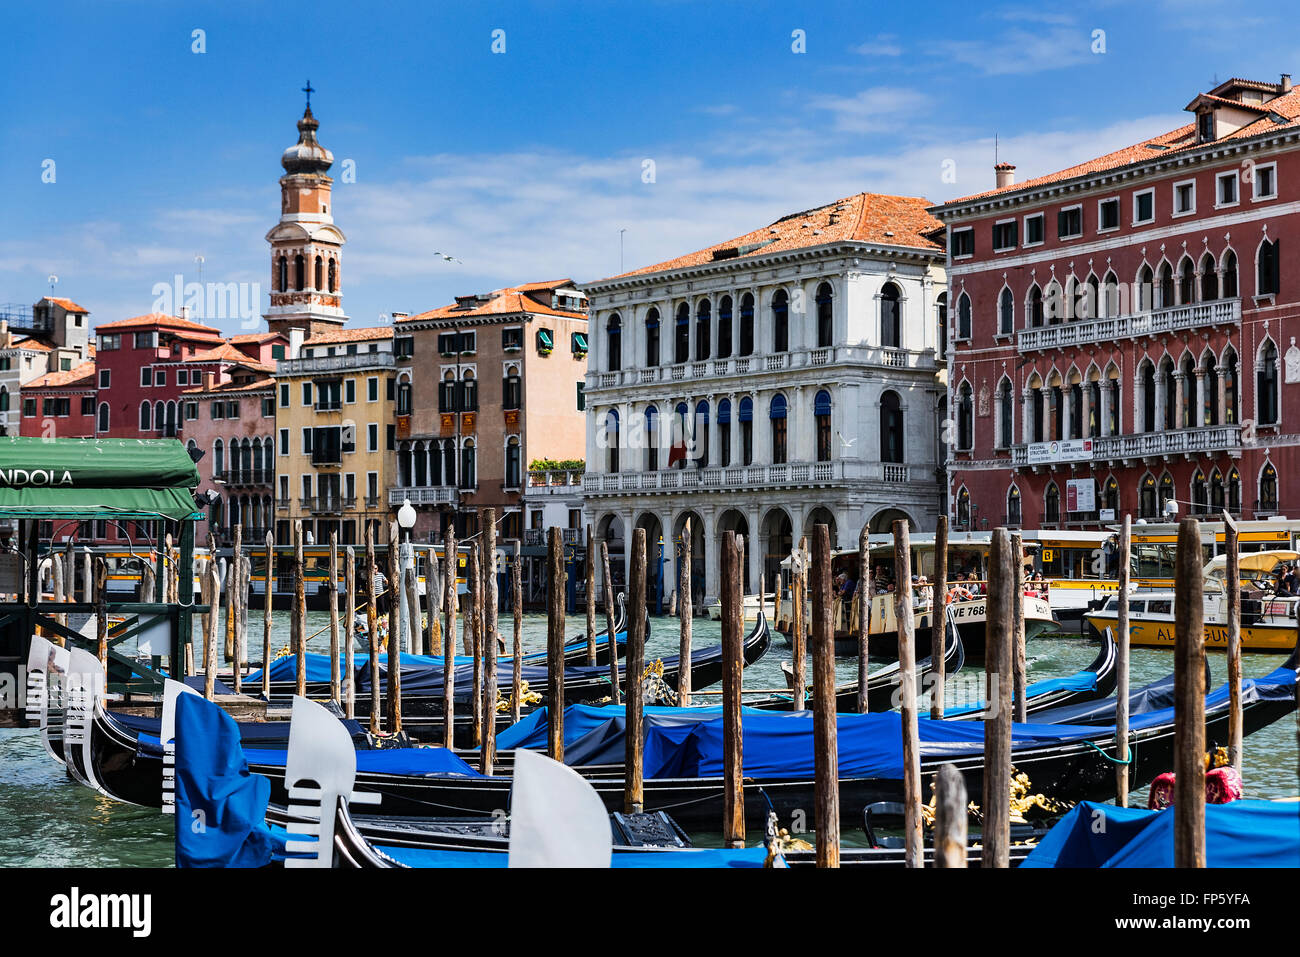 Gondola slips along the Grand Canal, Venice, Italy Stock Photo